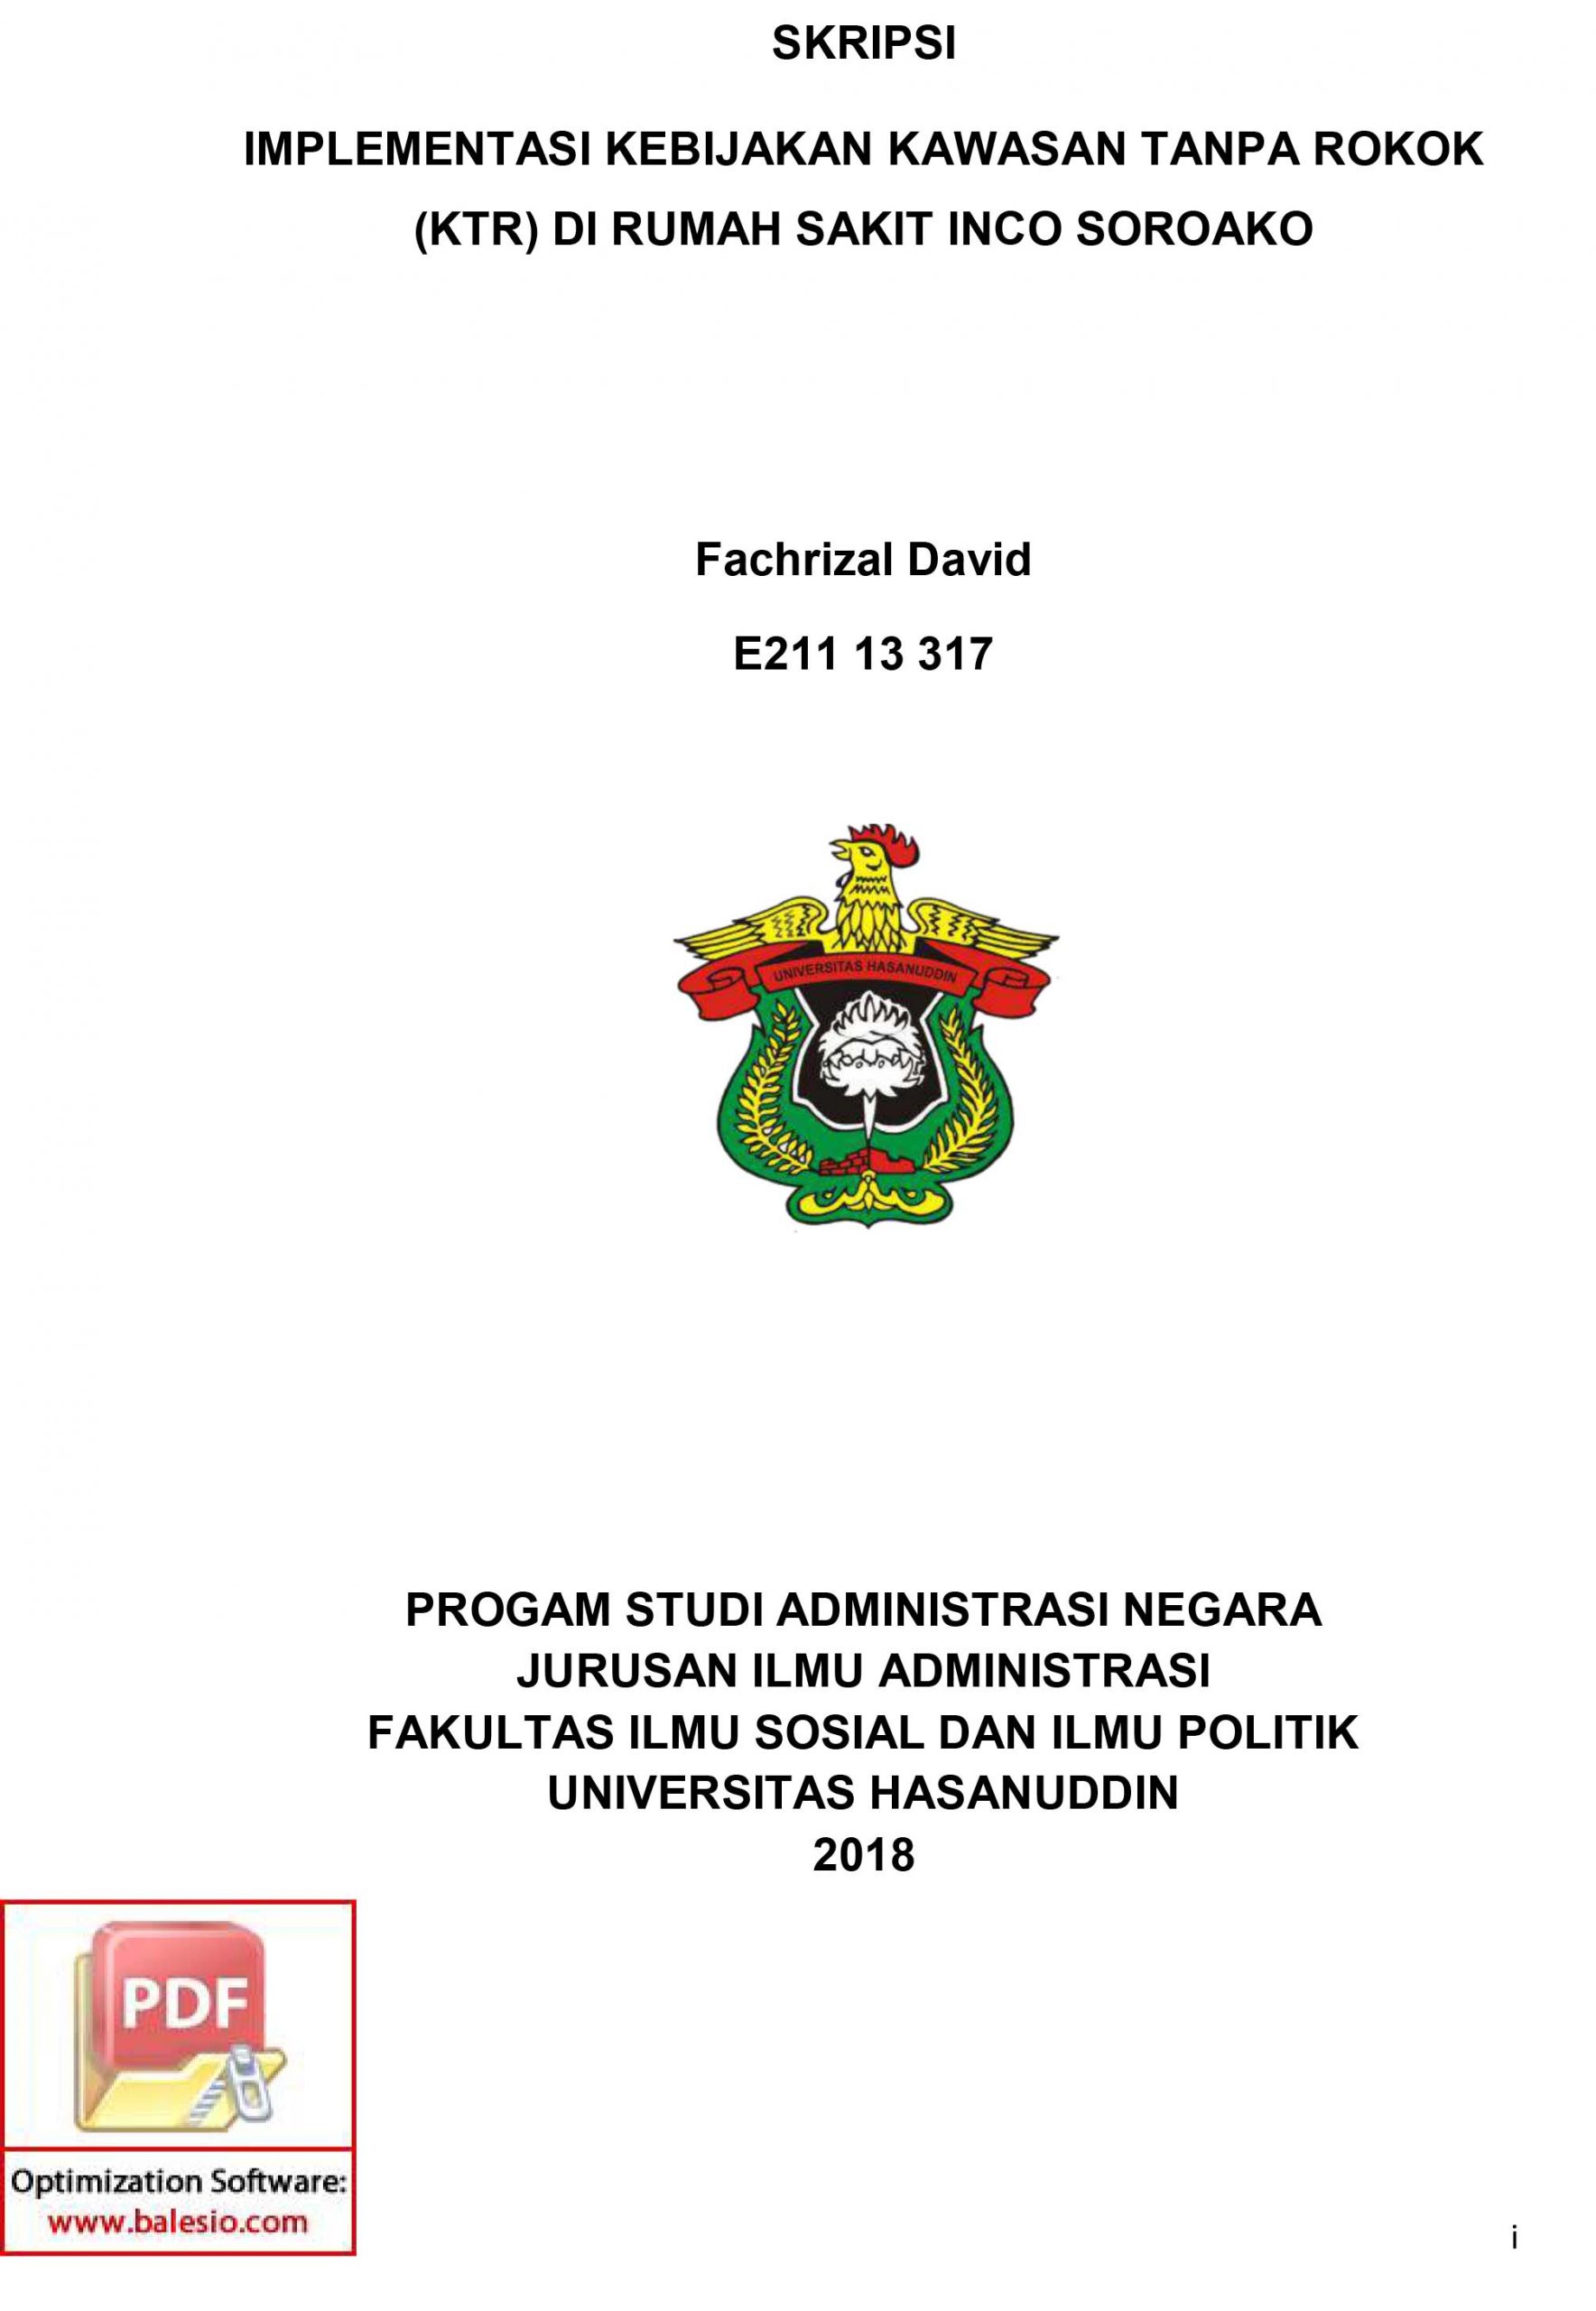 Skripsi Implementasi Kebijakan Kawasan Tanpa Rokok (KTR) Ddi Rumah Sakit Inco Soroako_FISIP Universitas Hasanudin – 2018